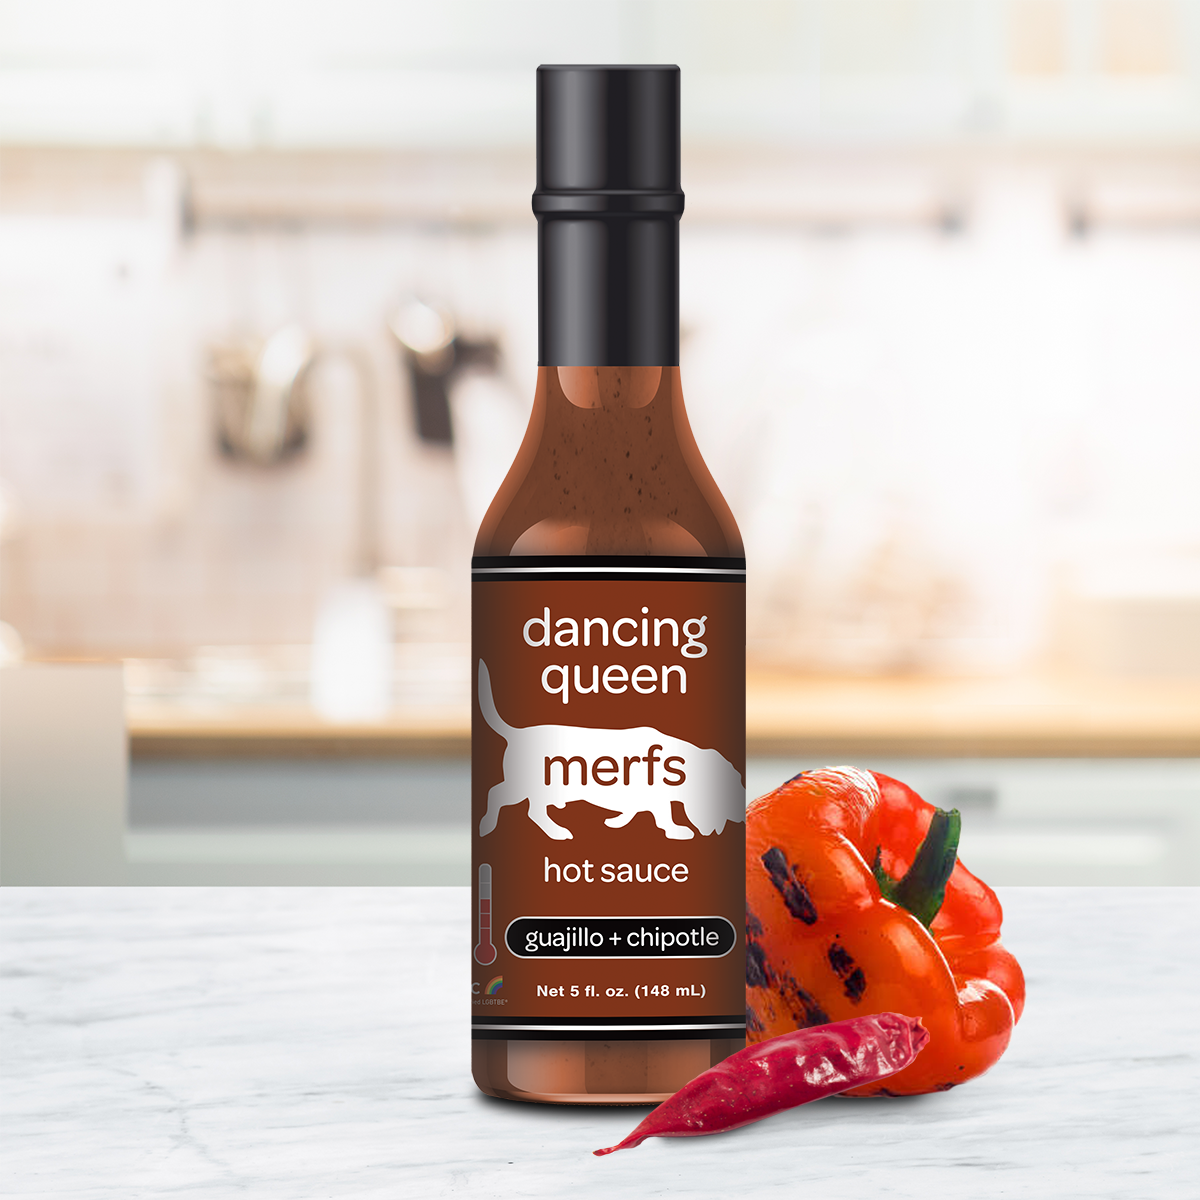 Hot | Dancing Merfs Sauce | Queen Sauce Hot Condiments Vegan